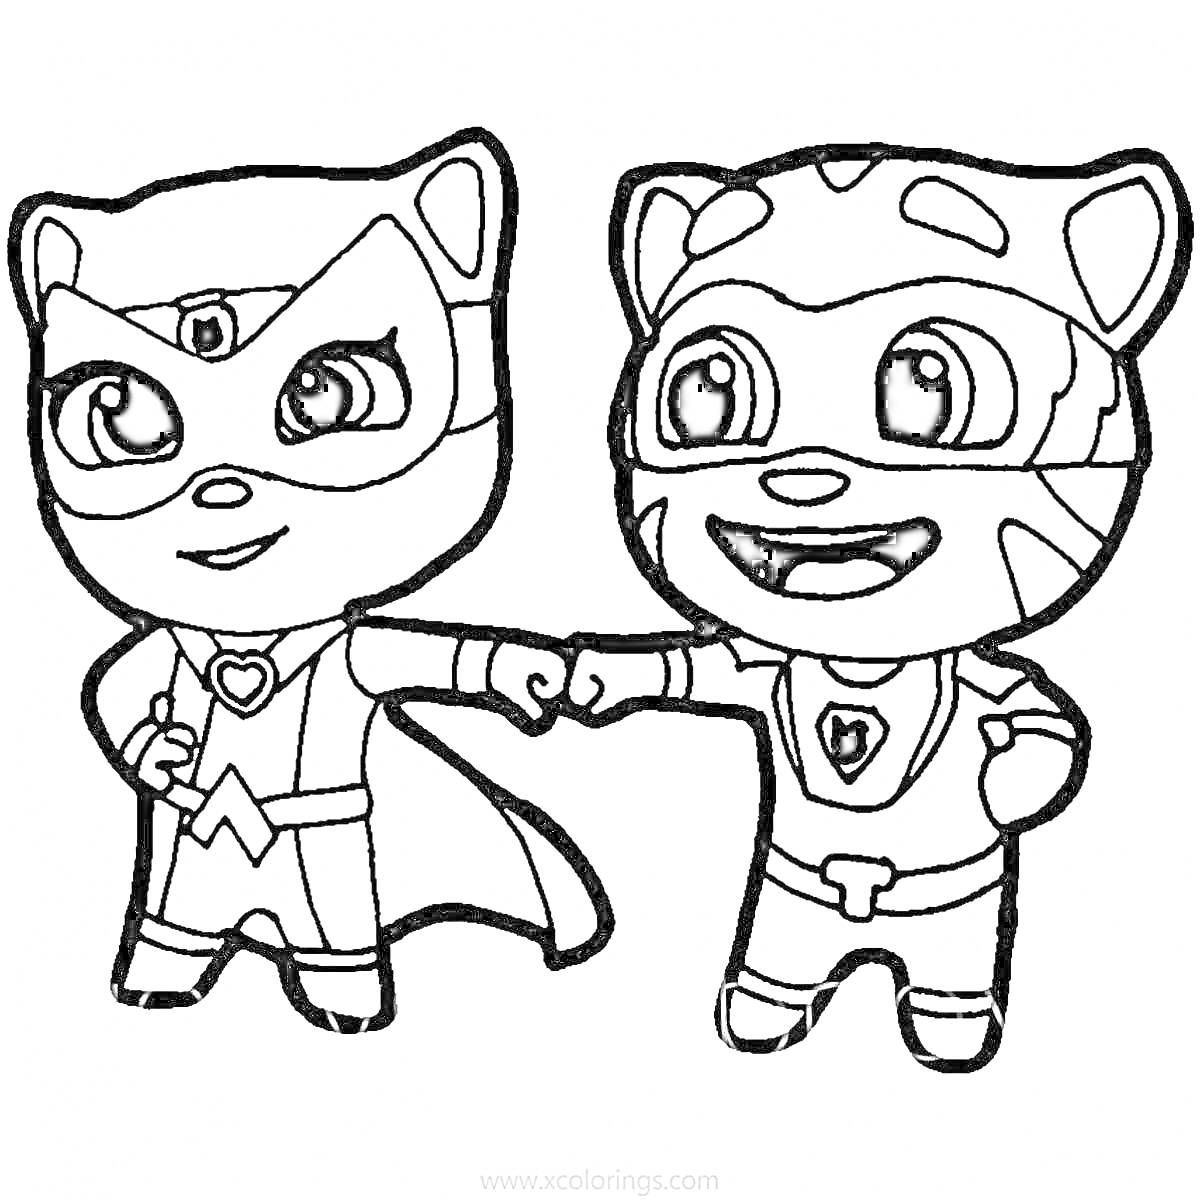 Раскраска Том и его друг в супергеройских костюмах, делающие жест 